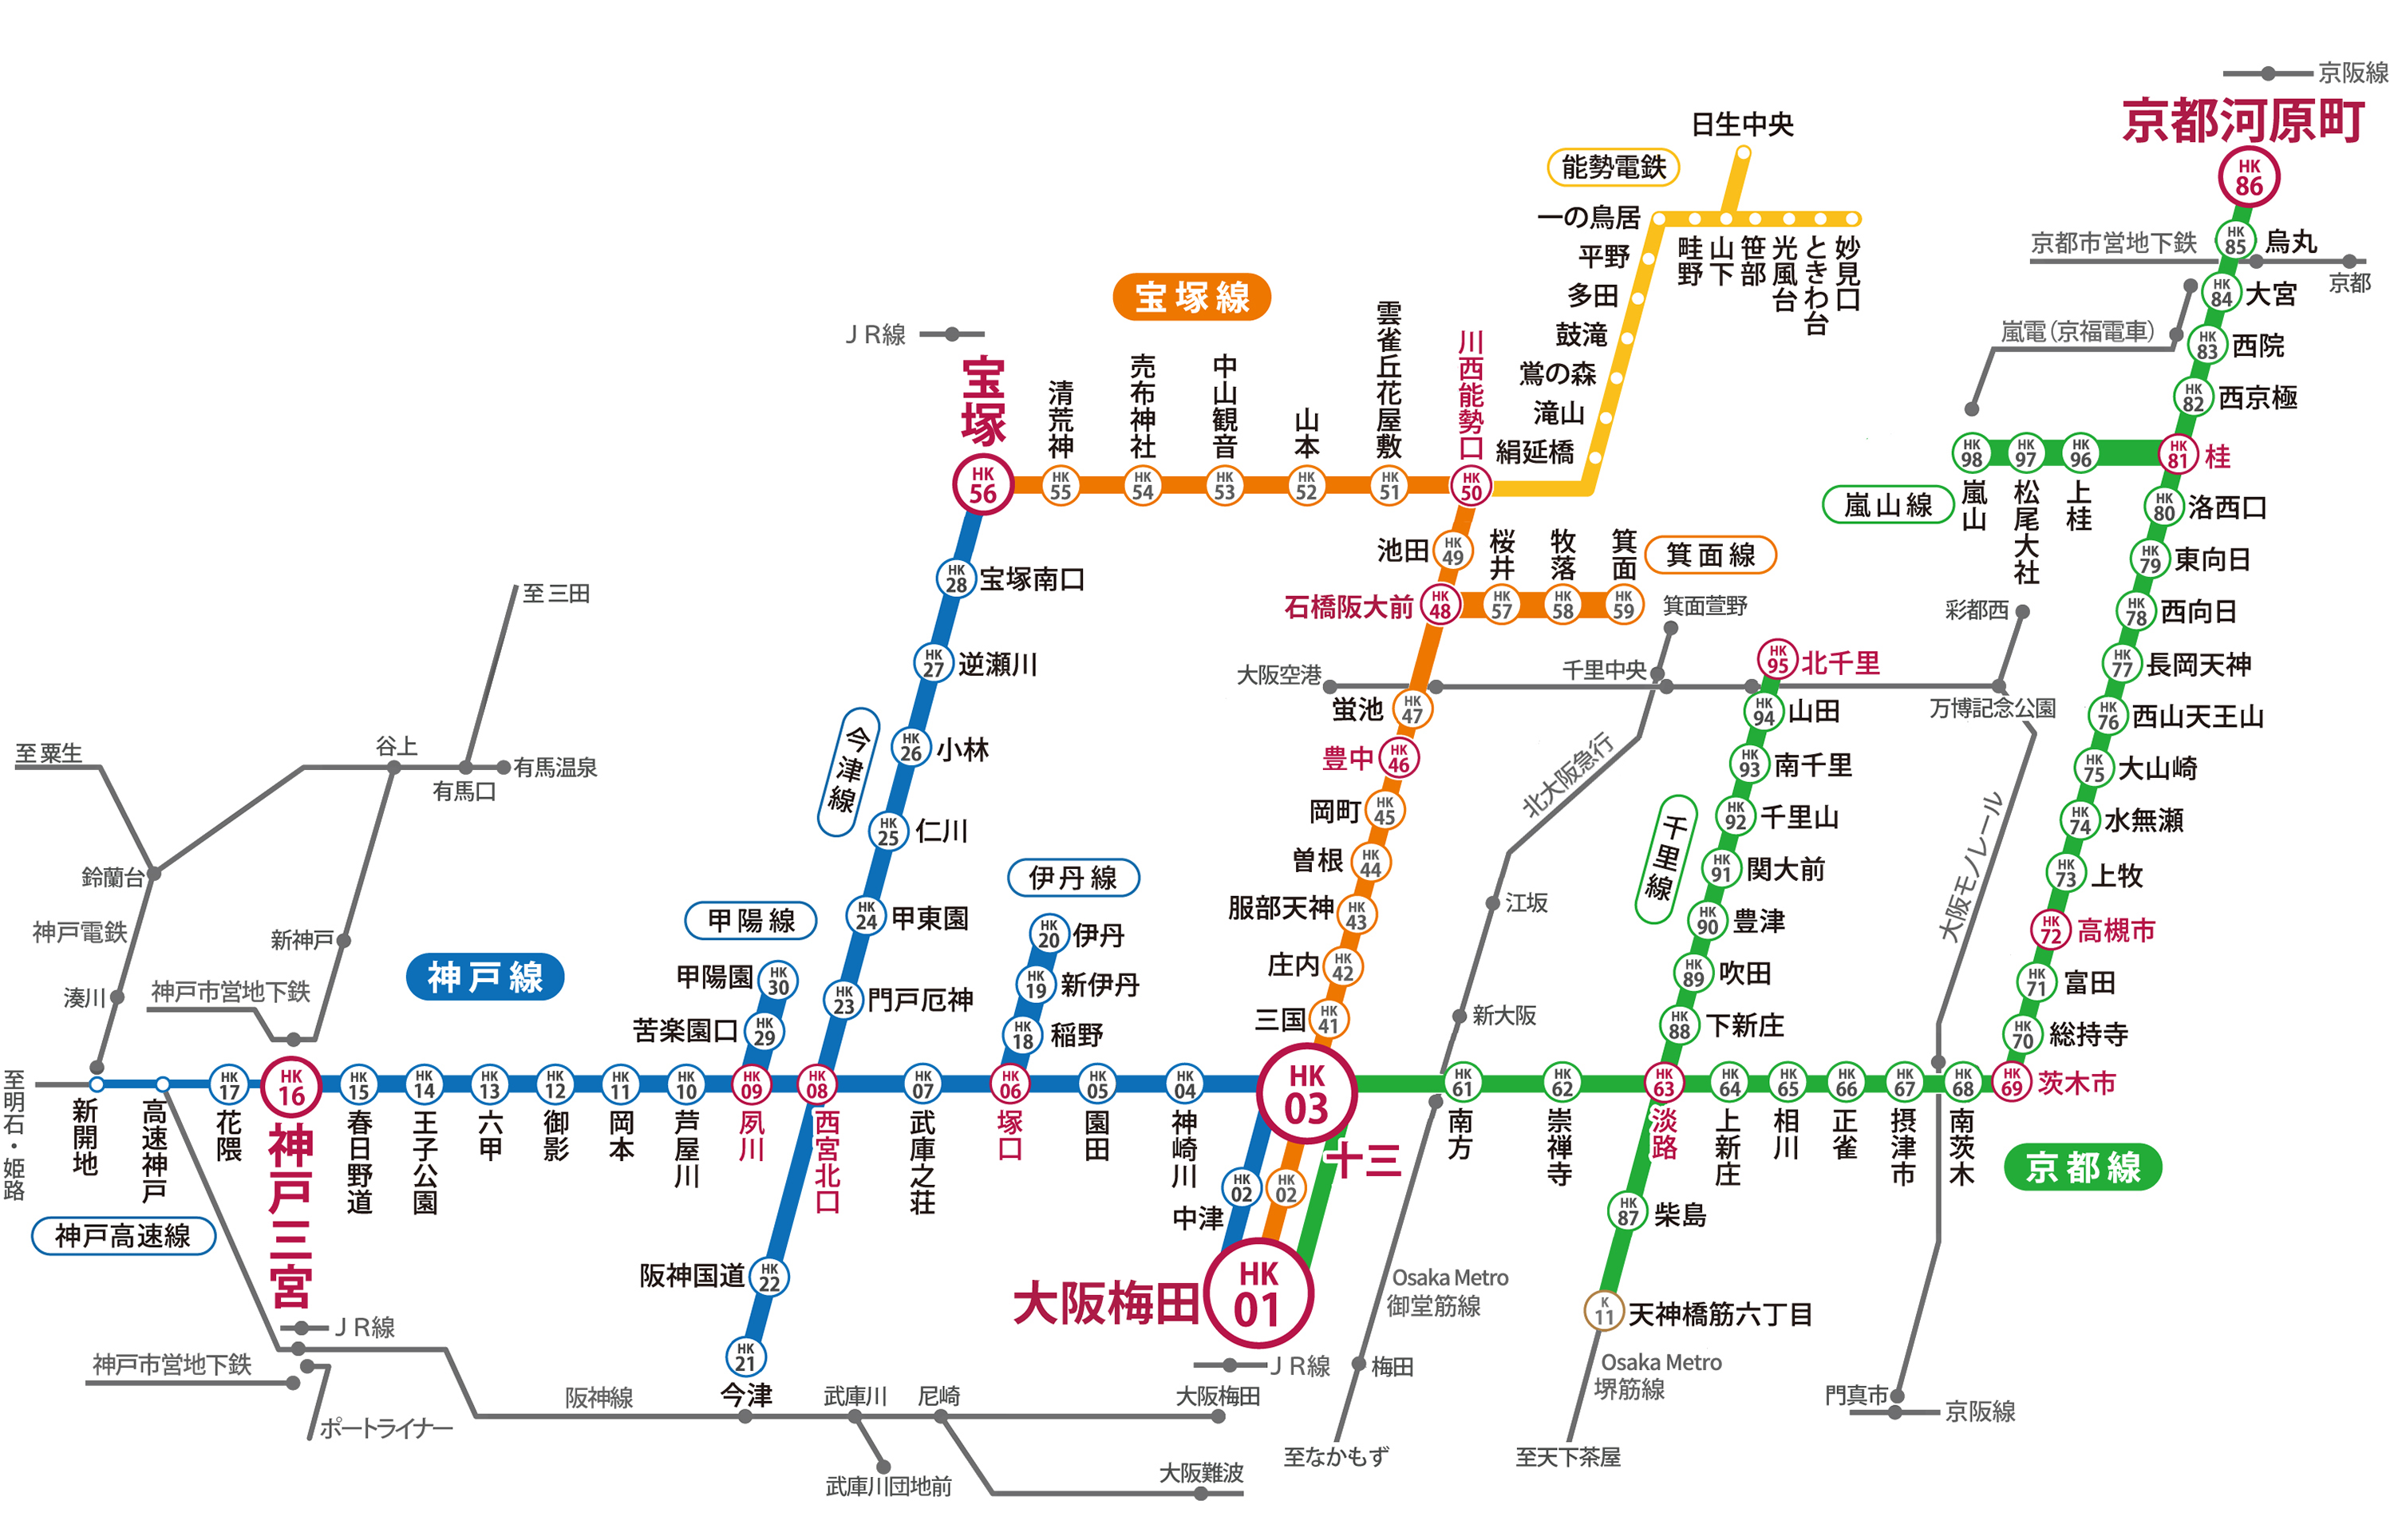 阪急電鉄の路線図。
神戸線・宝塚線・京都線で構成されており、87の駅がある。